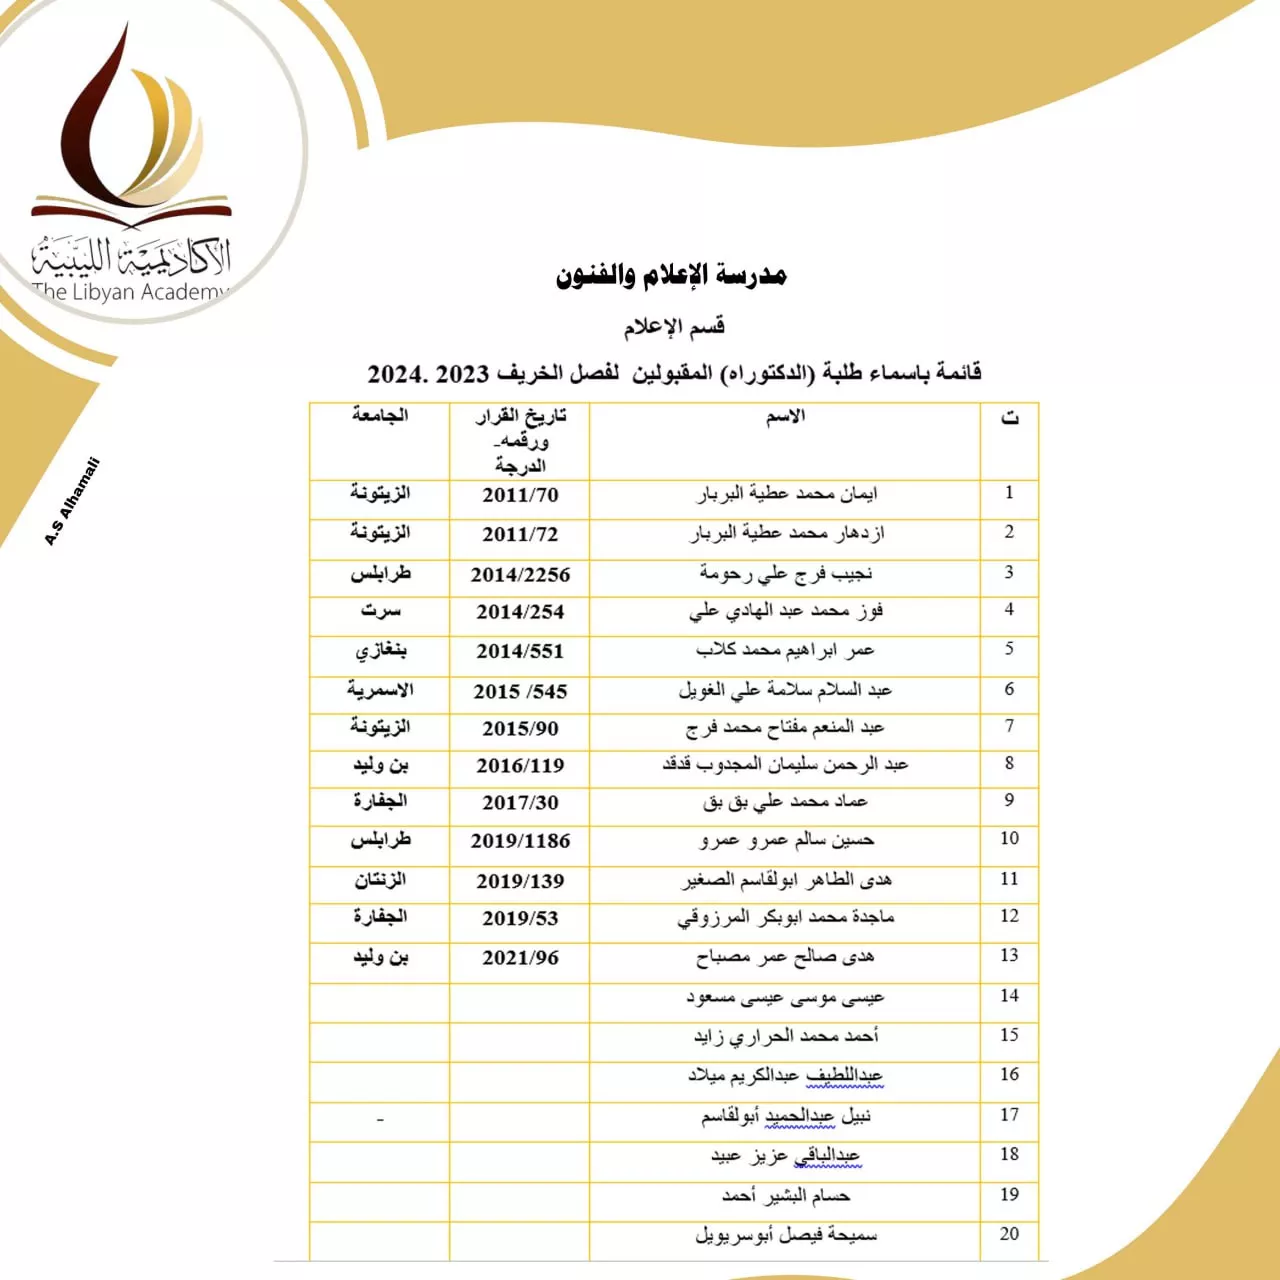 نتائج امتحانات المفاضلة للمتقدمين لدراسة الدكتوراه بالأكاديمية الليبية للدراسات العليا لمدرسة  الإعلام والفنون  للفصل الدراسي خريف 2023/ 2024